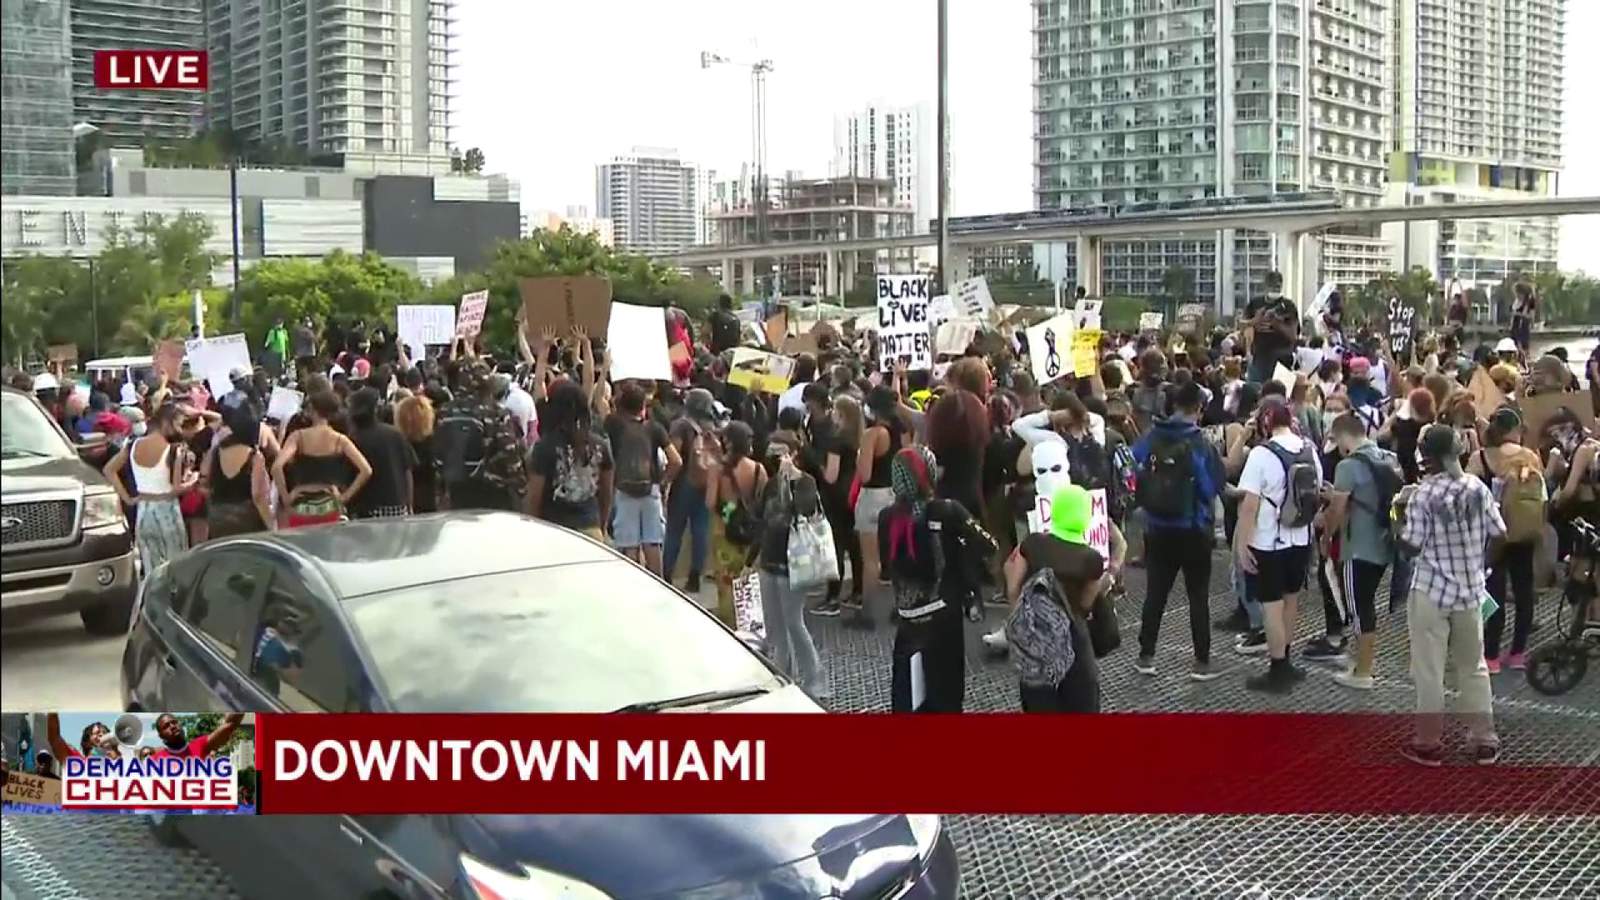 Protesters march near Miami's Brickell City Center